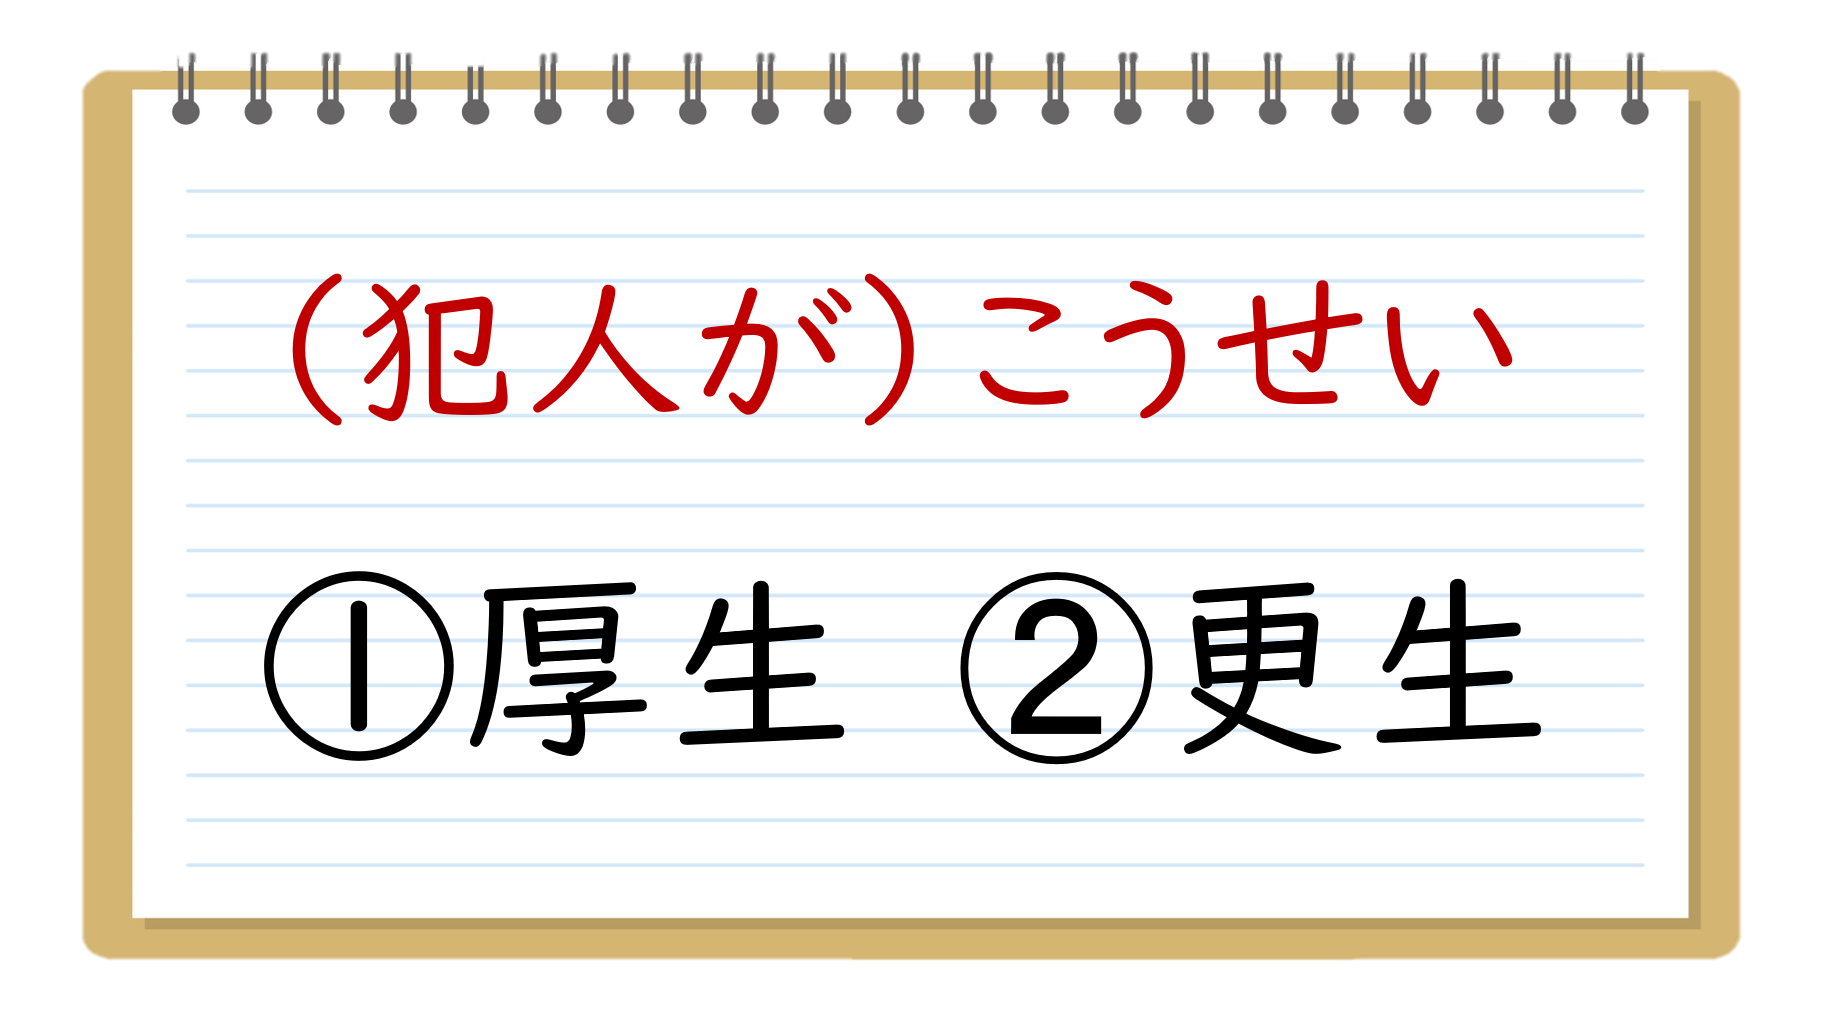 書き間違いやすい漢字クイズ 中学生 高校生向け 似ている紛らわしい問題を紹介 クイズ王国